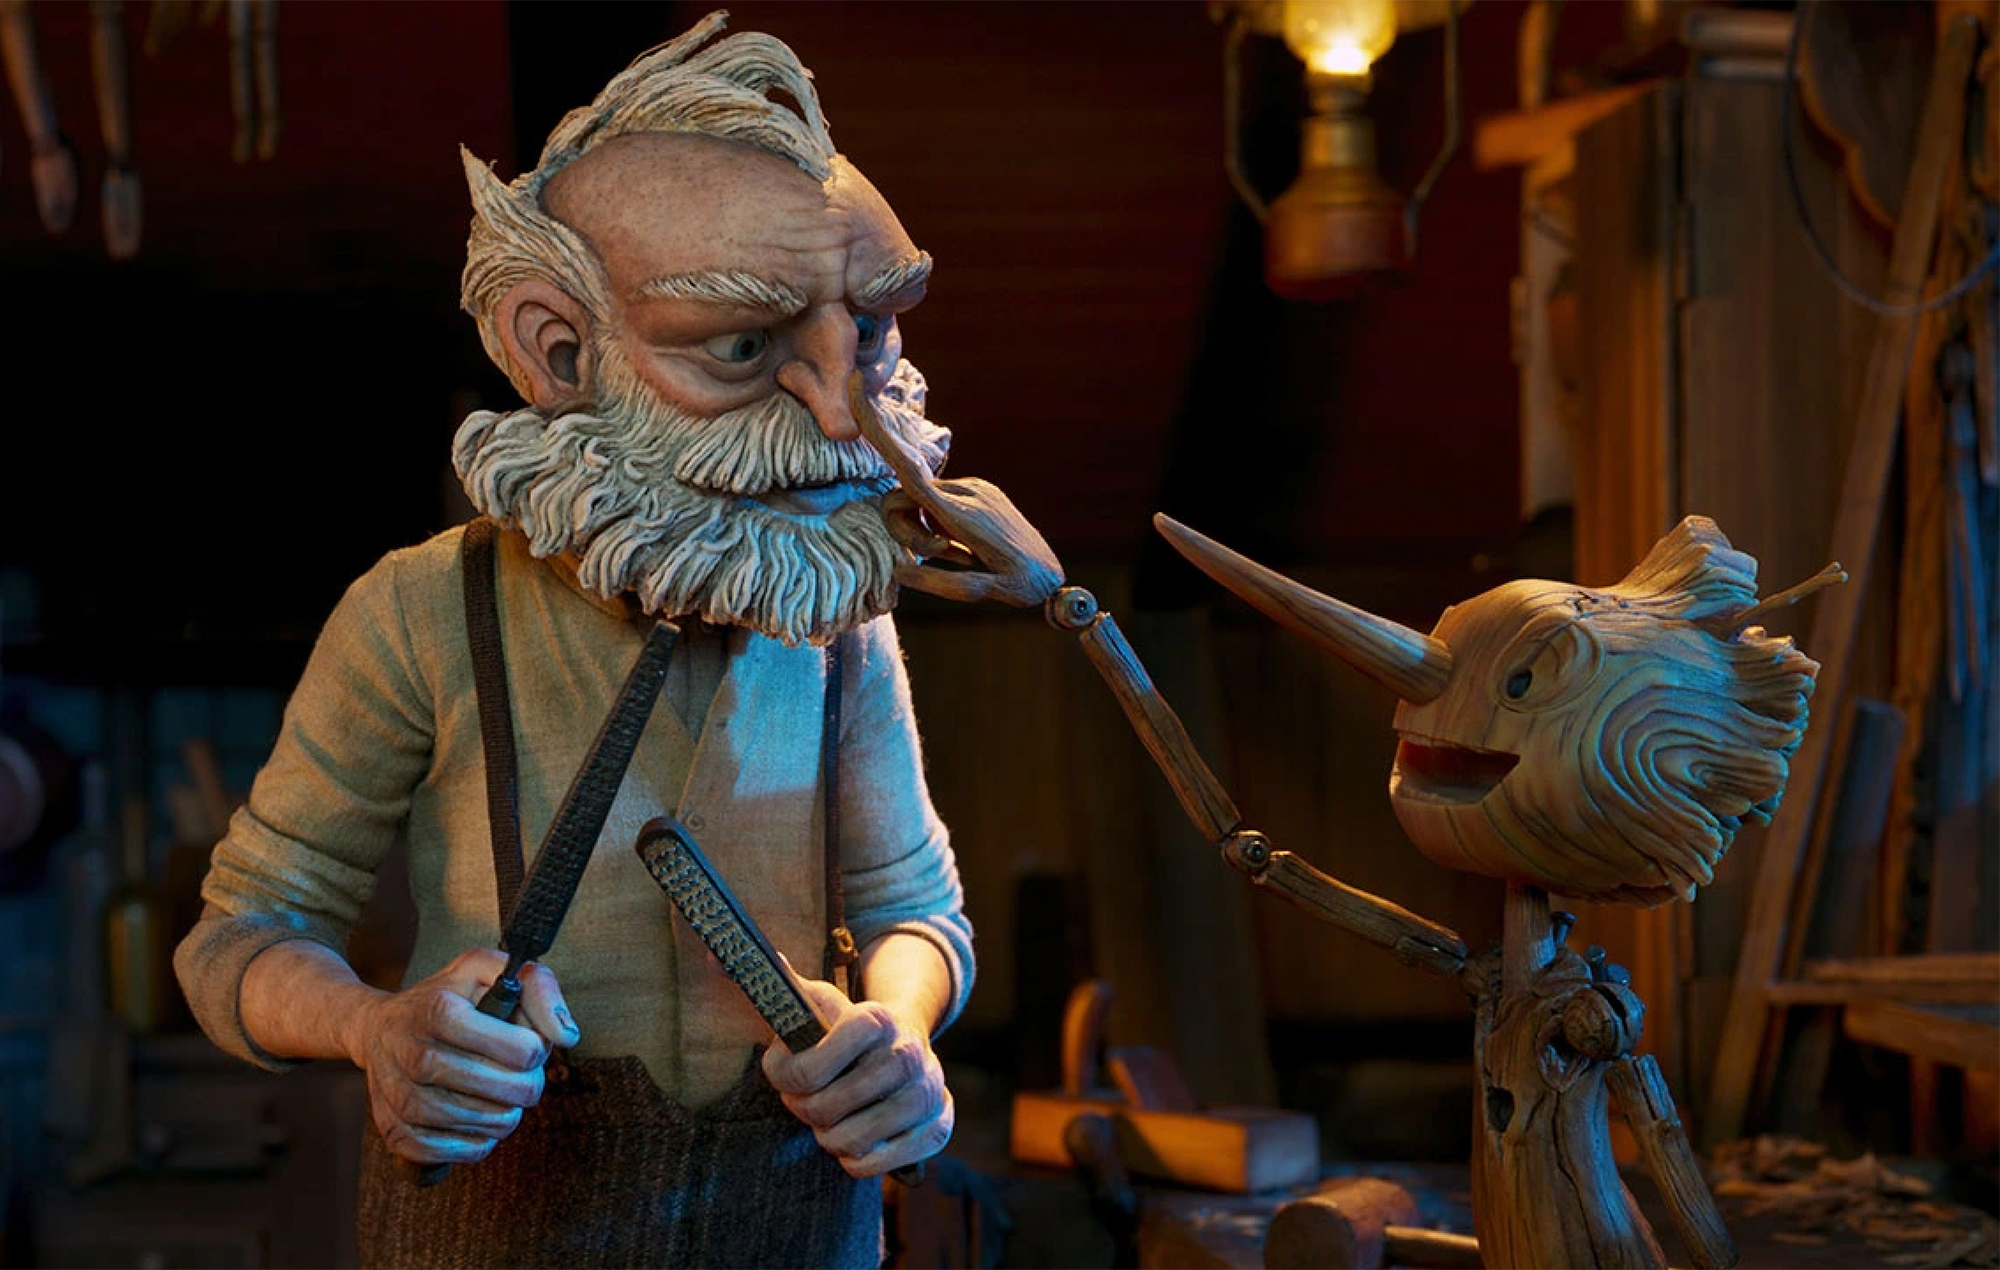 El Festival de Cine de Londres estrenará "Pinocho" de Guillermo del Toro